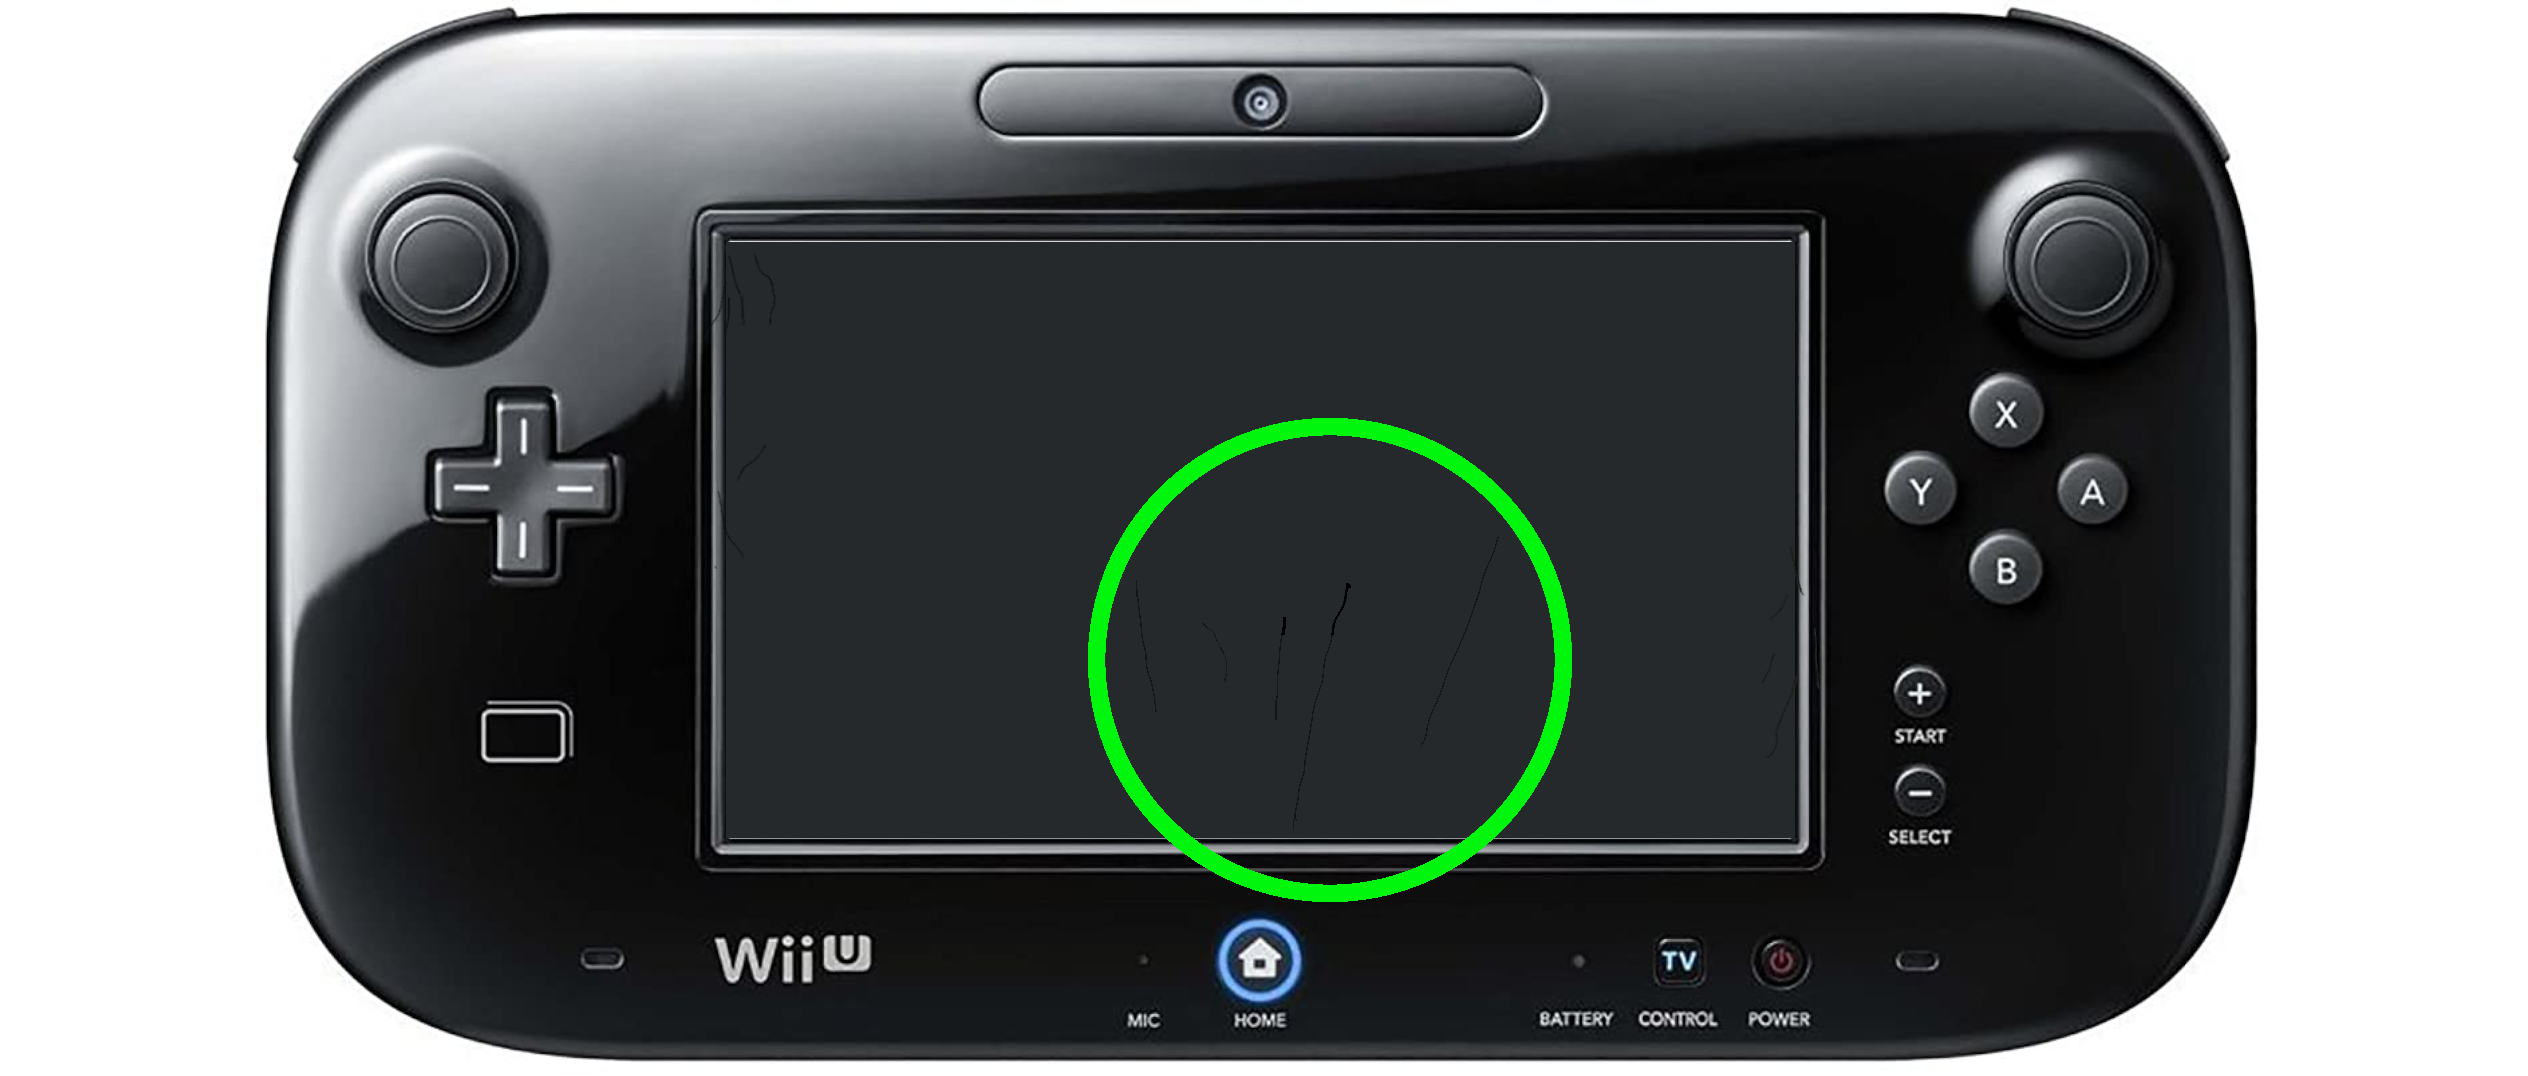 Afkeer spleet omvatten Wii U kopen